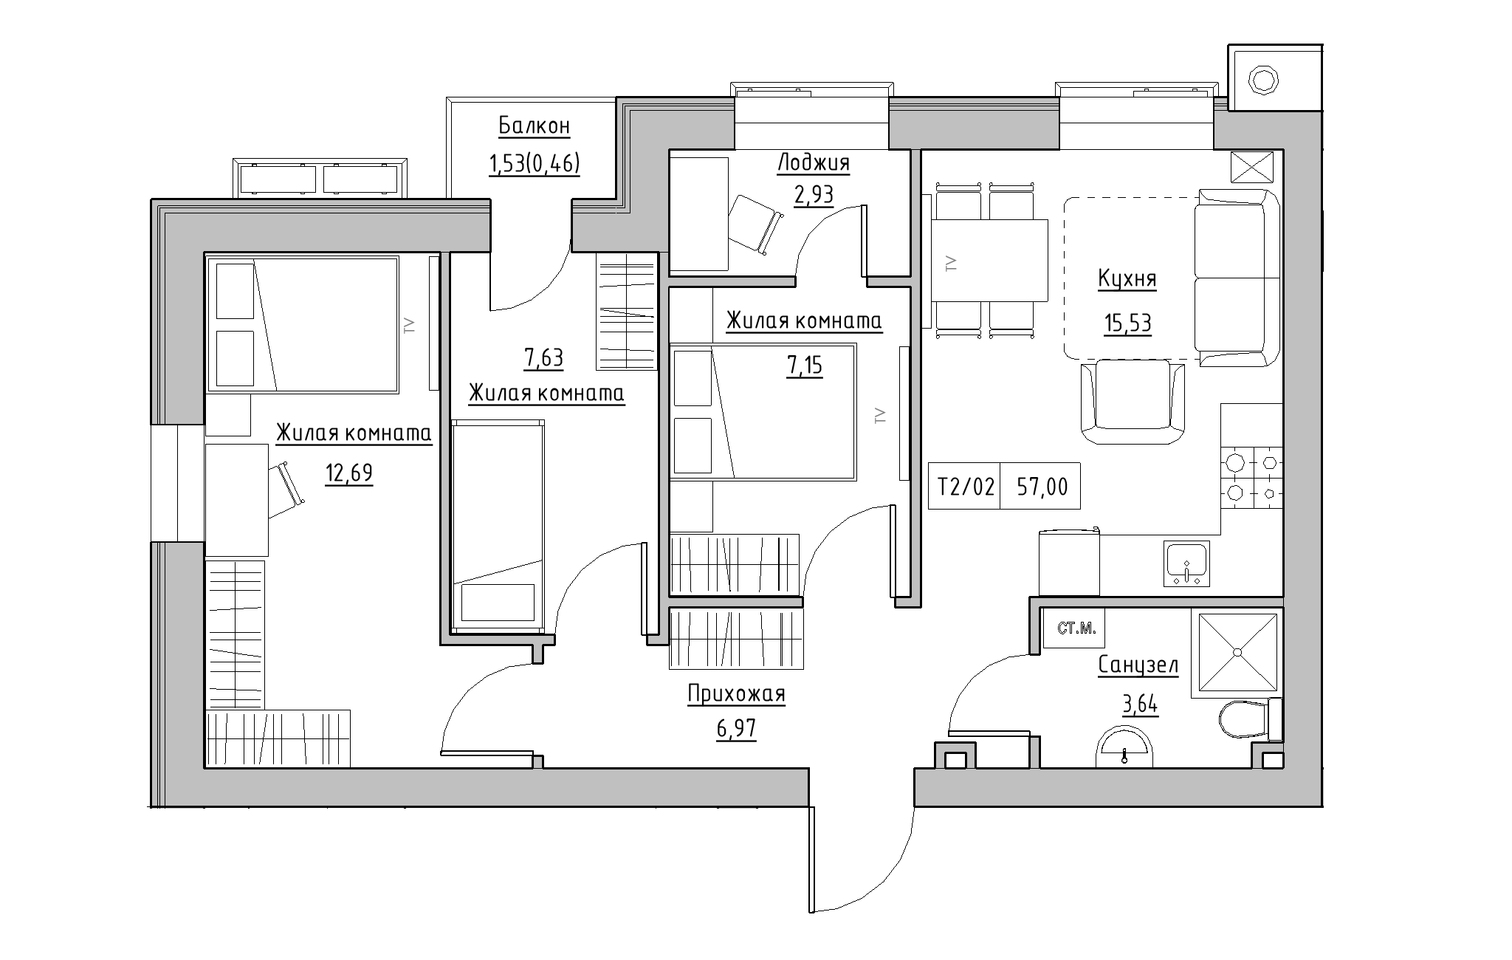 Планування 3-к квартира площею 57м2, KS-013-03/0006.